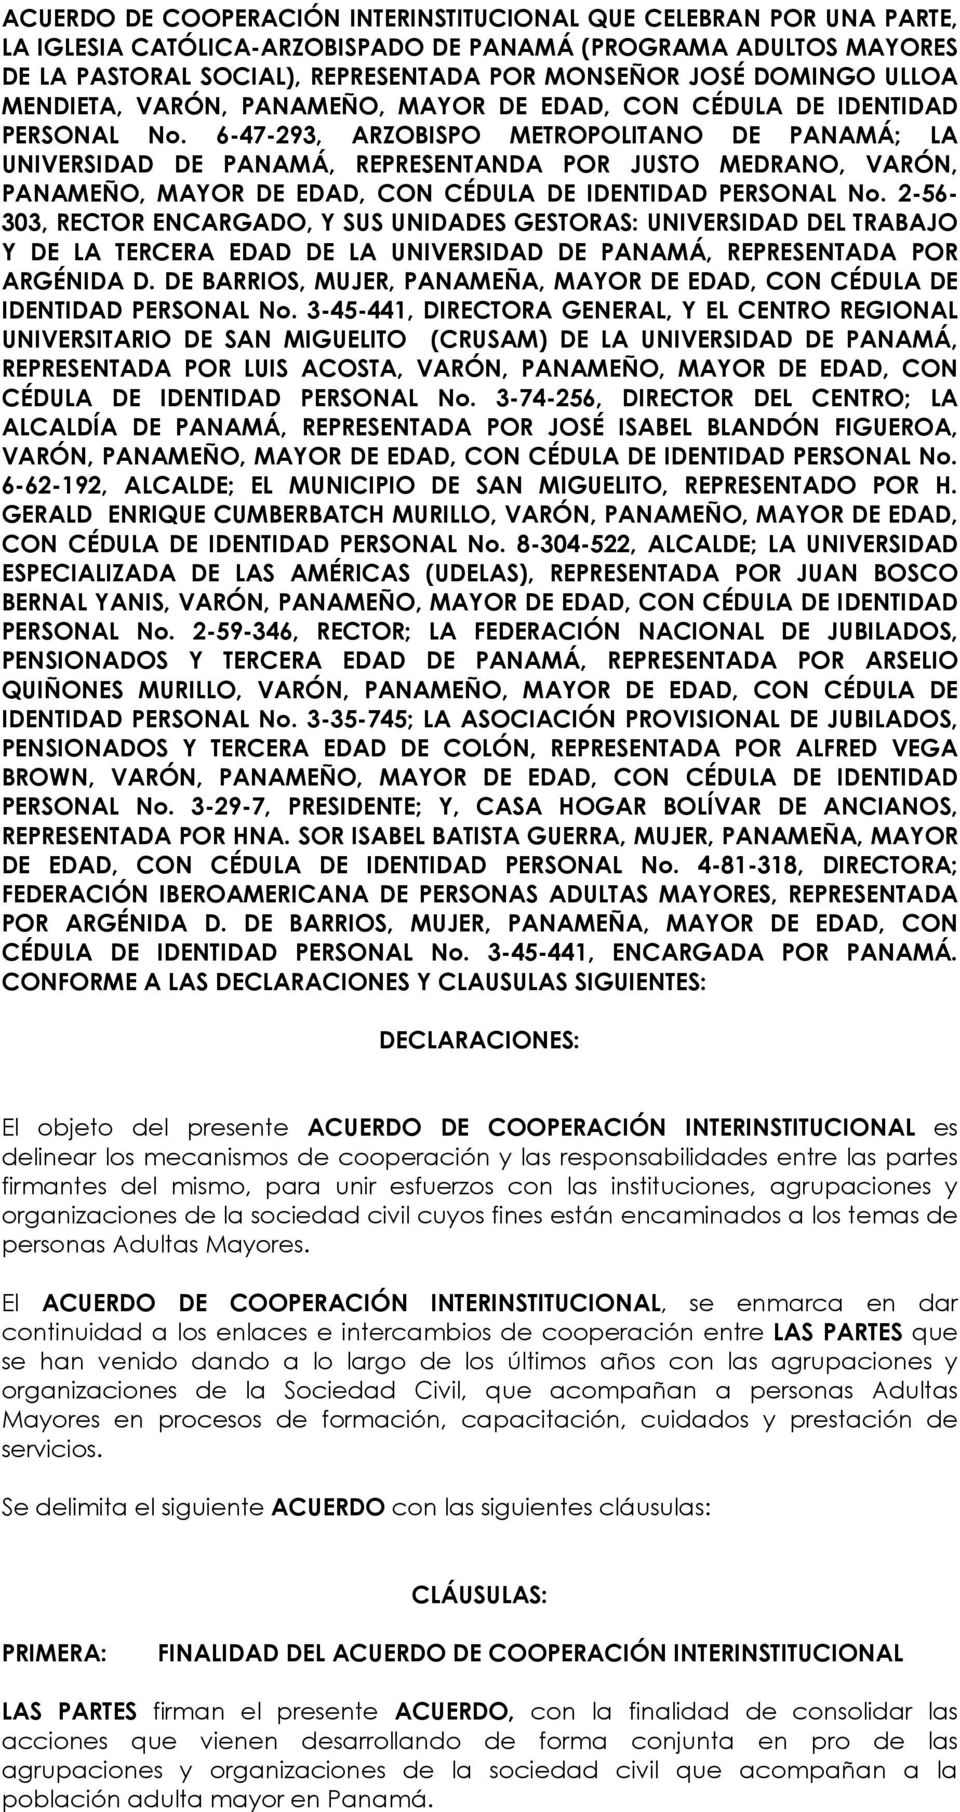 6-47-293, ARZOBISPO METROPOLITANO DE PANAMÁ; LA UNIVERSIDAD DE PANAMÁ, REPRESENTANDA POR JUSTO MEDRANO, VARÓN, PANAMEÑO, MAYOR DE EDAD, CON CÉDULA DE IDENTIDAD PERSONAL No.